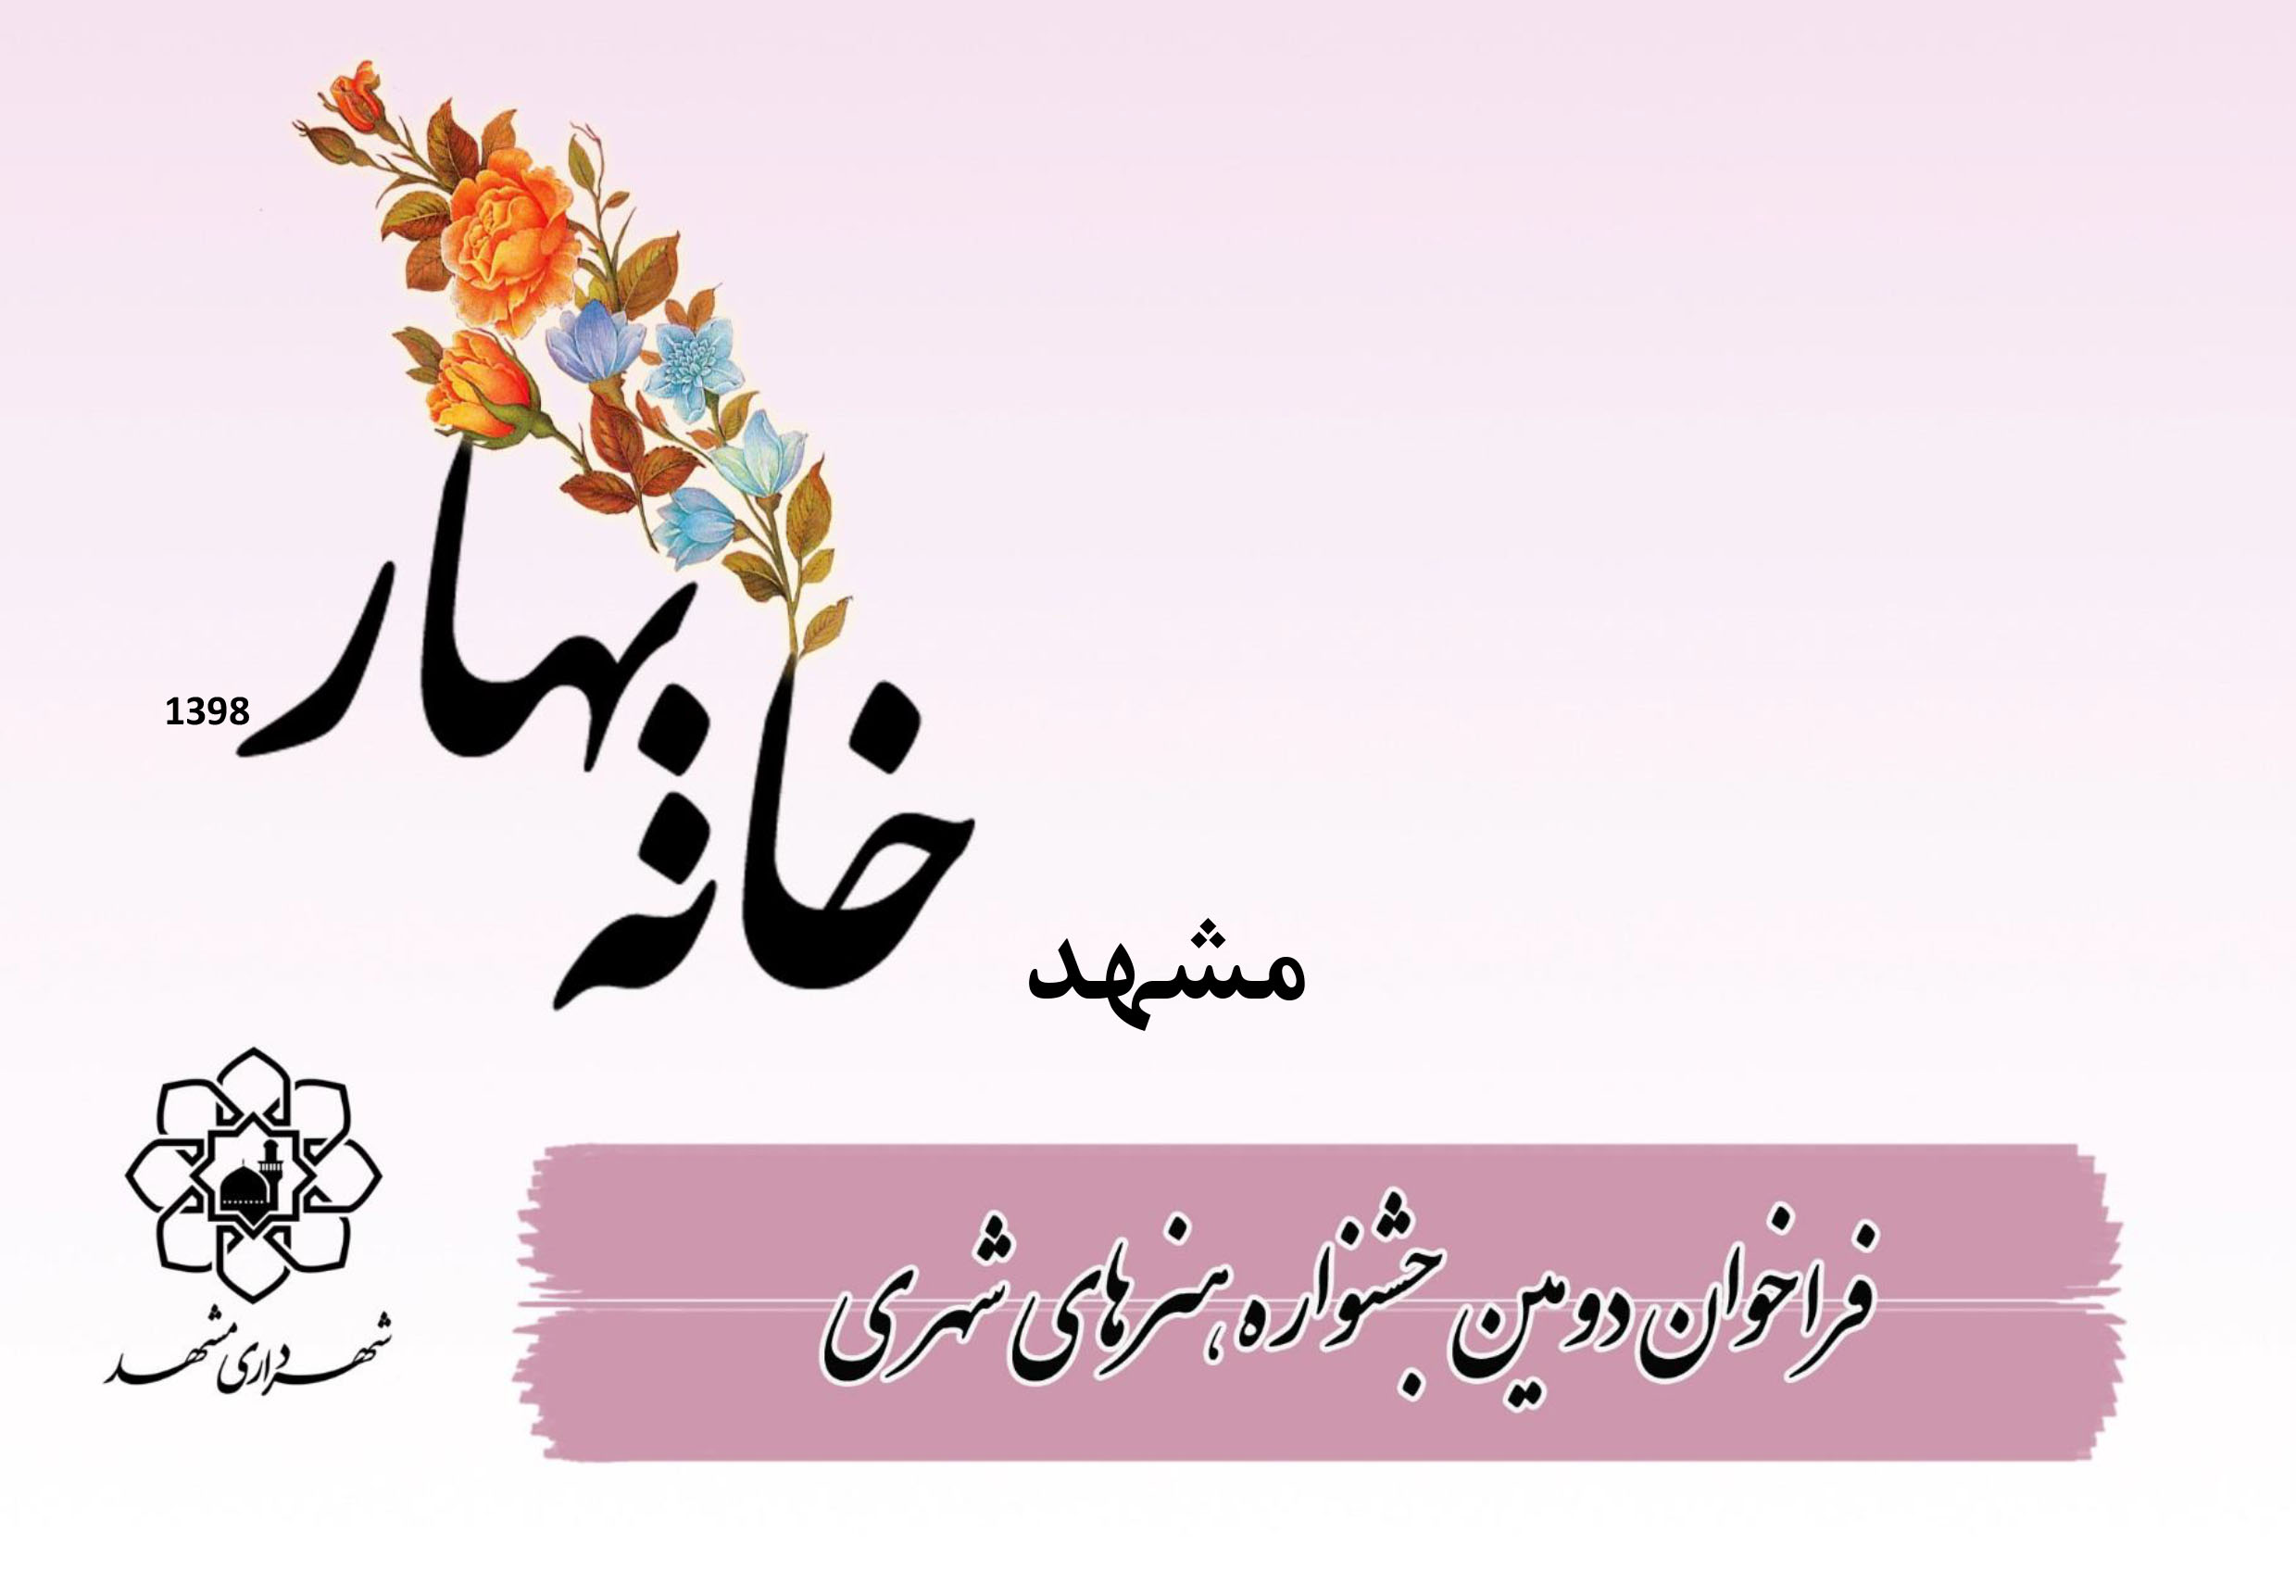 فراخوان دومین جشنواره هنرهای شهری مشهد